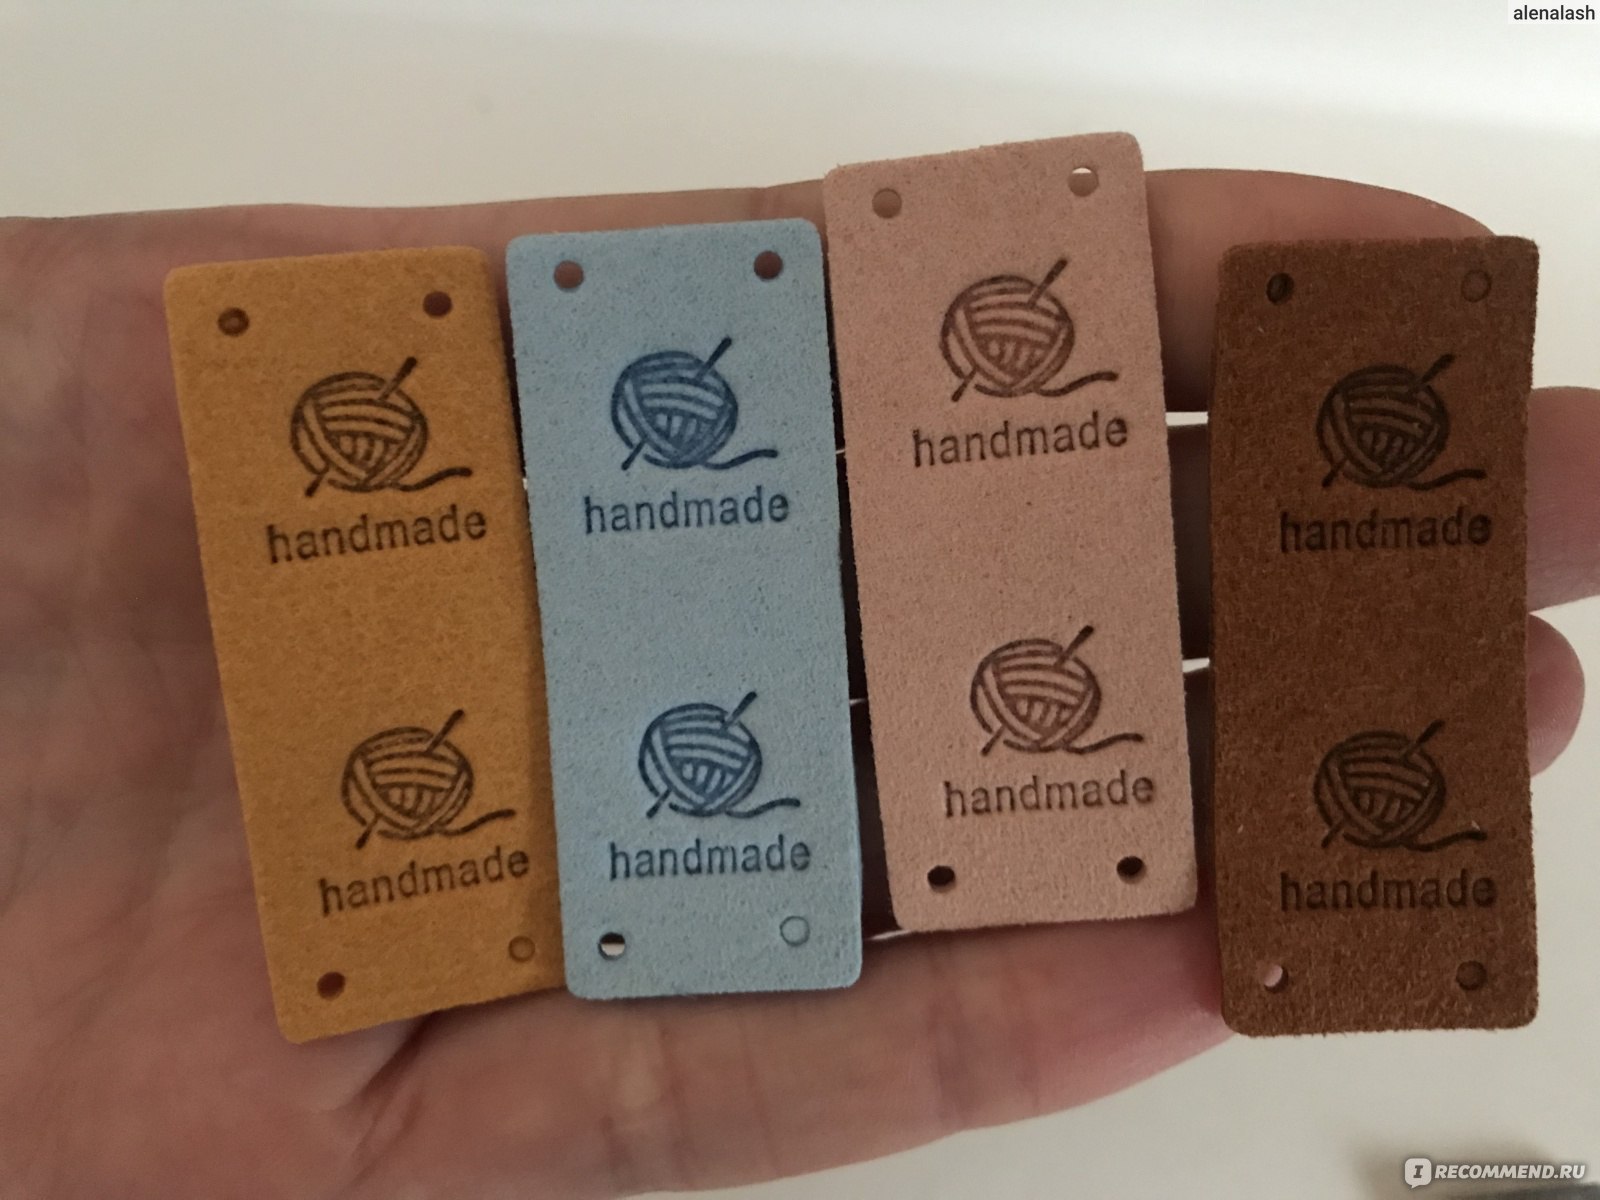 Купить картонные бирки «Handmade» оптом в интернет-магазине